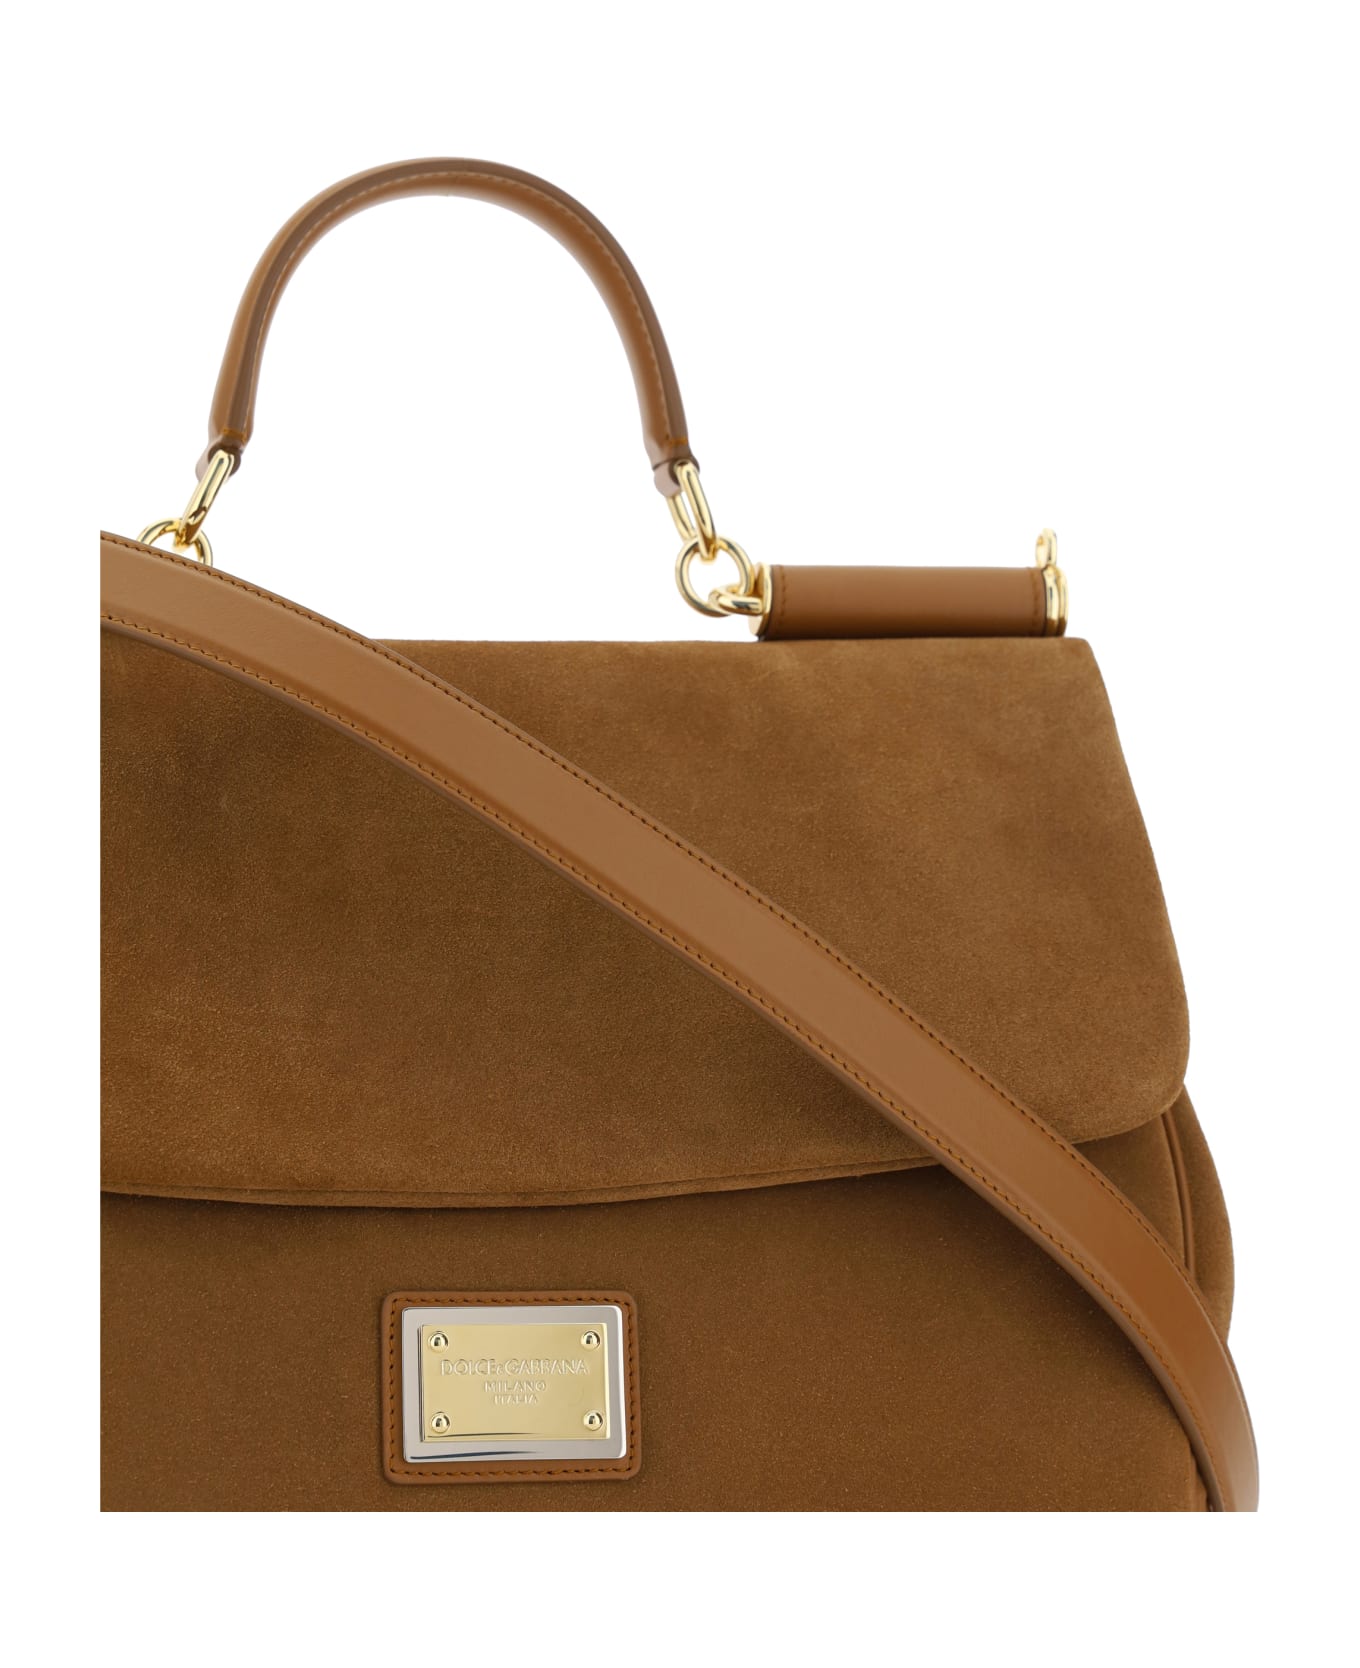 Dolce & Gabbana Sicily Handbag - Camel トートバッグ